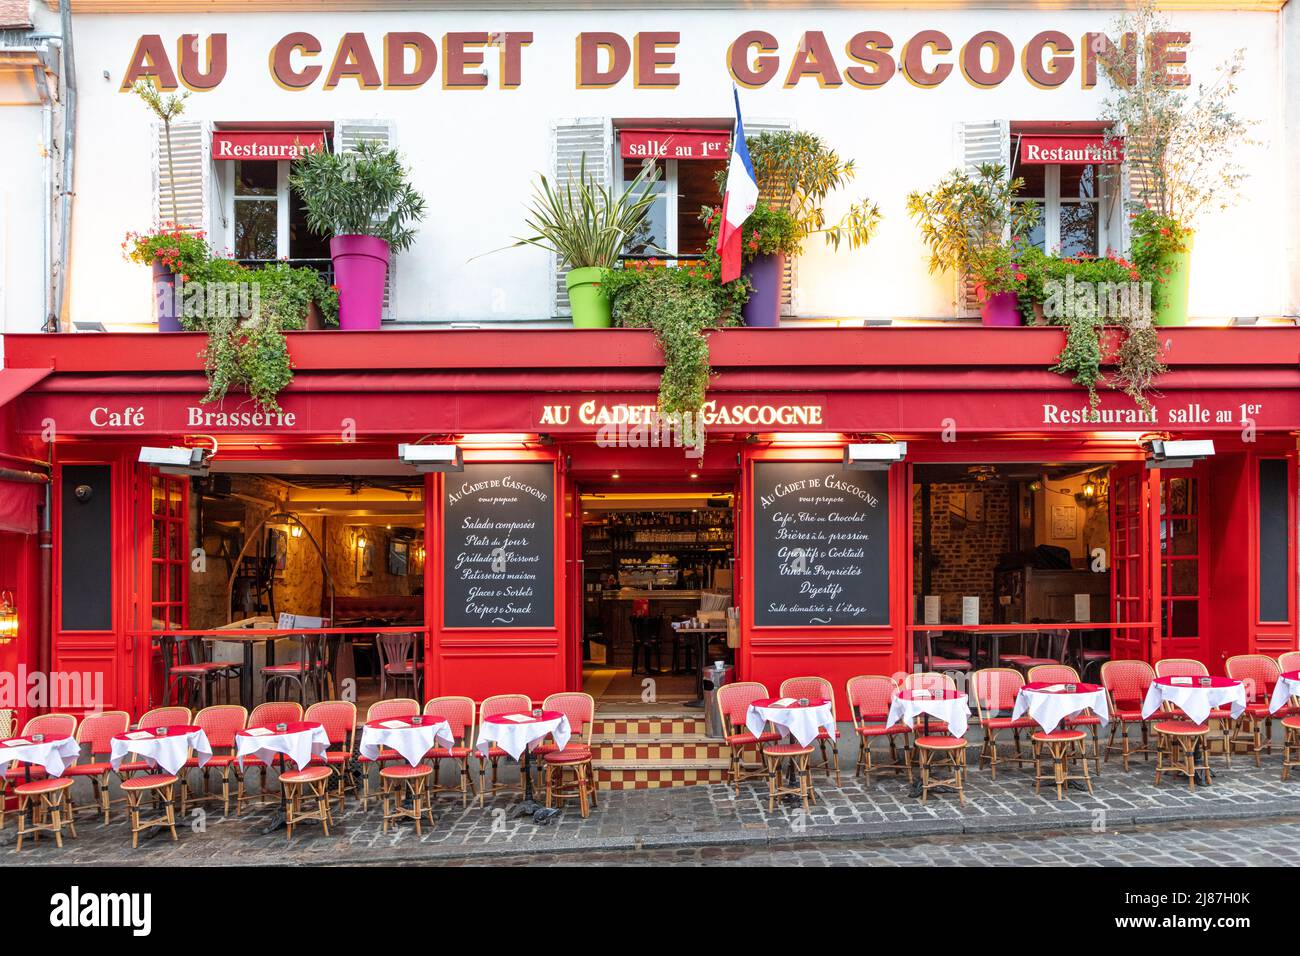 Soirée à la brasserie au Cadet de Gascogne, Montmartre, Paris, France Banque D'Images